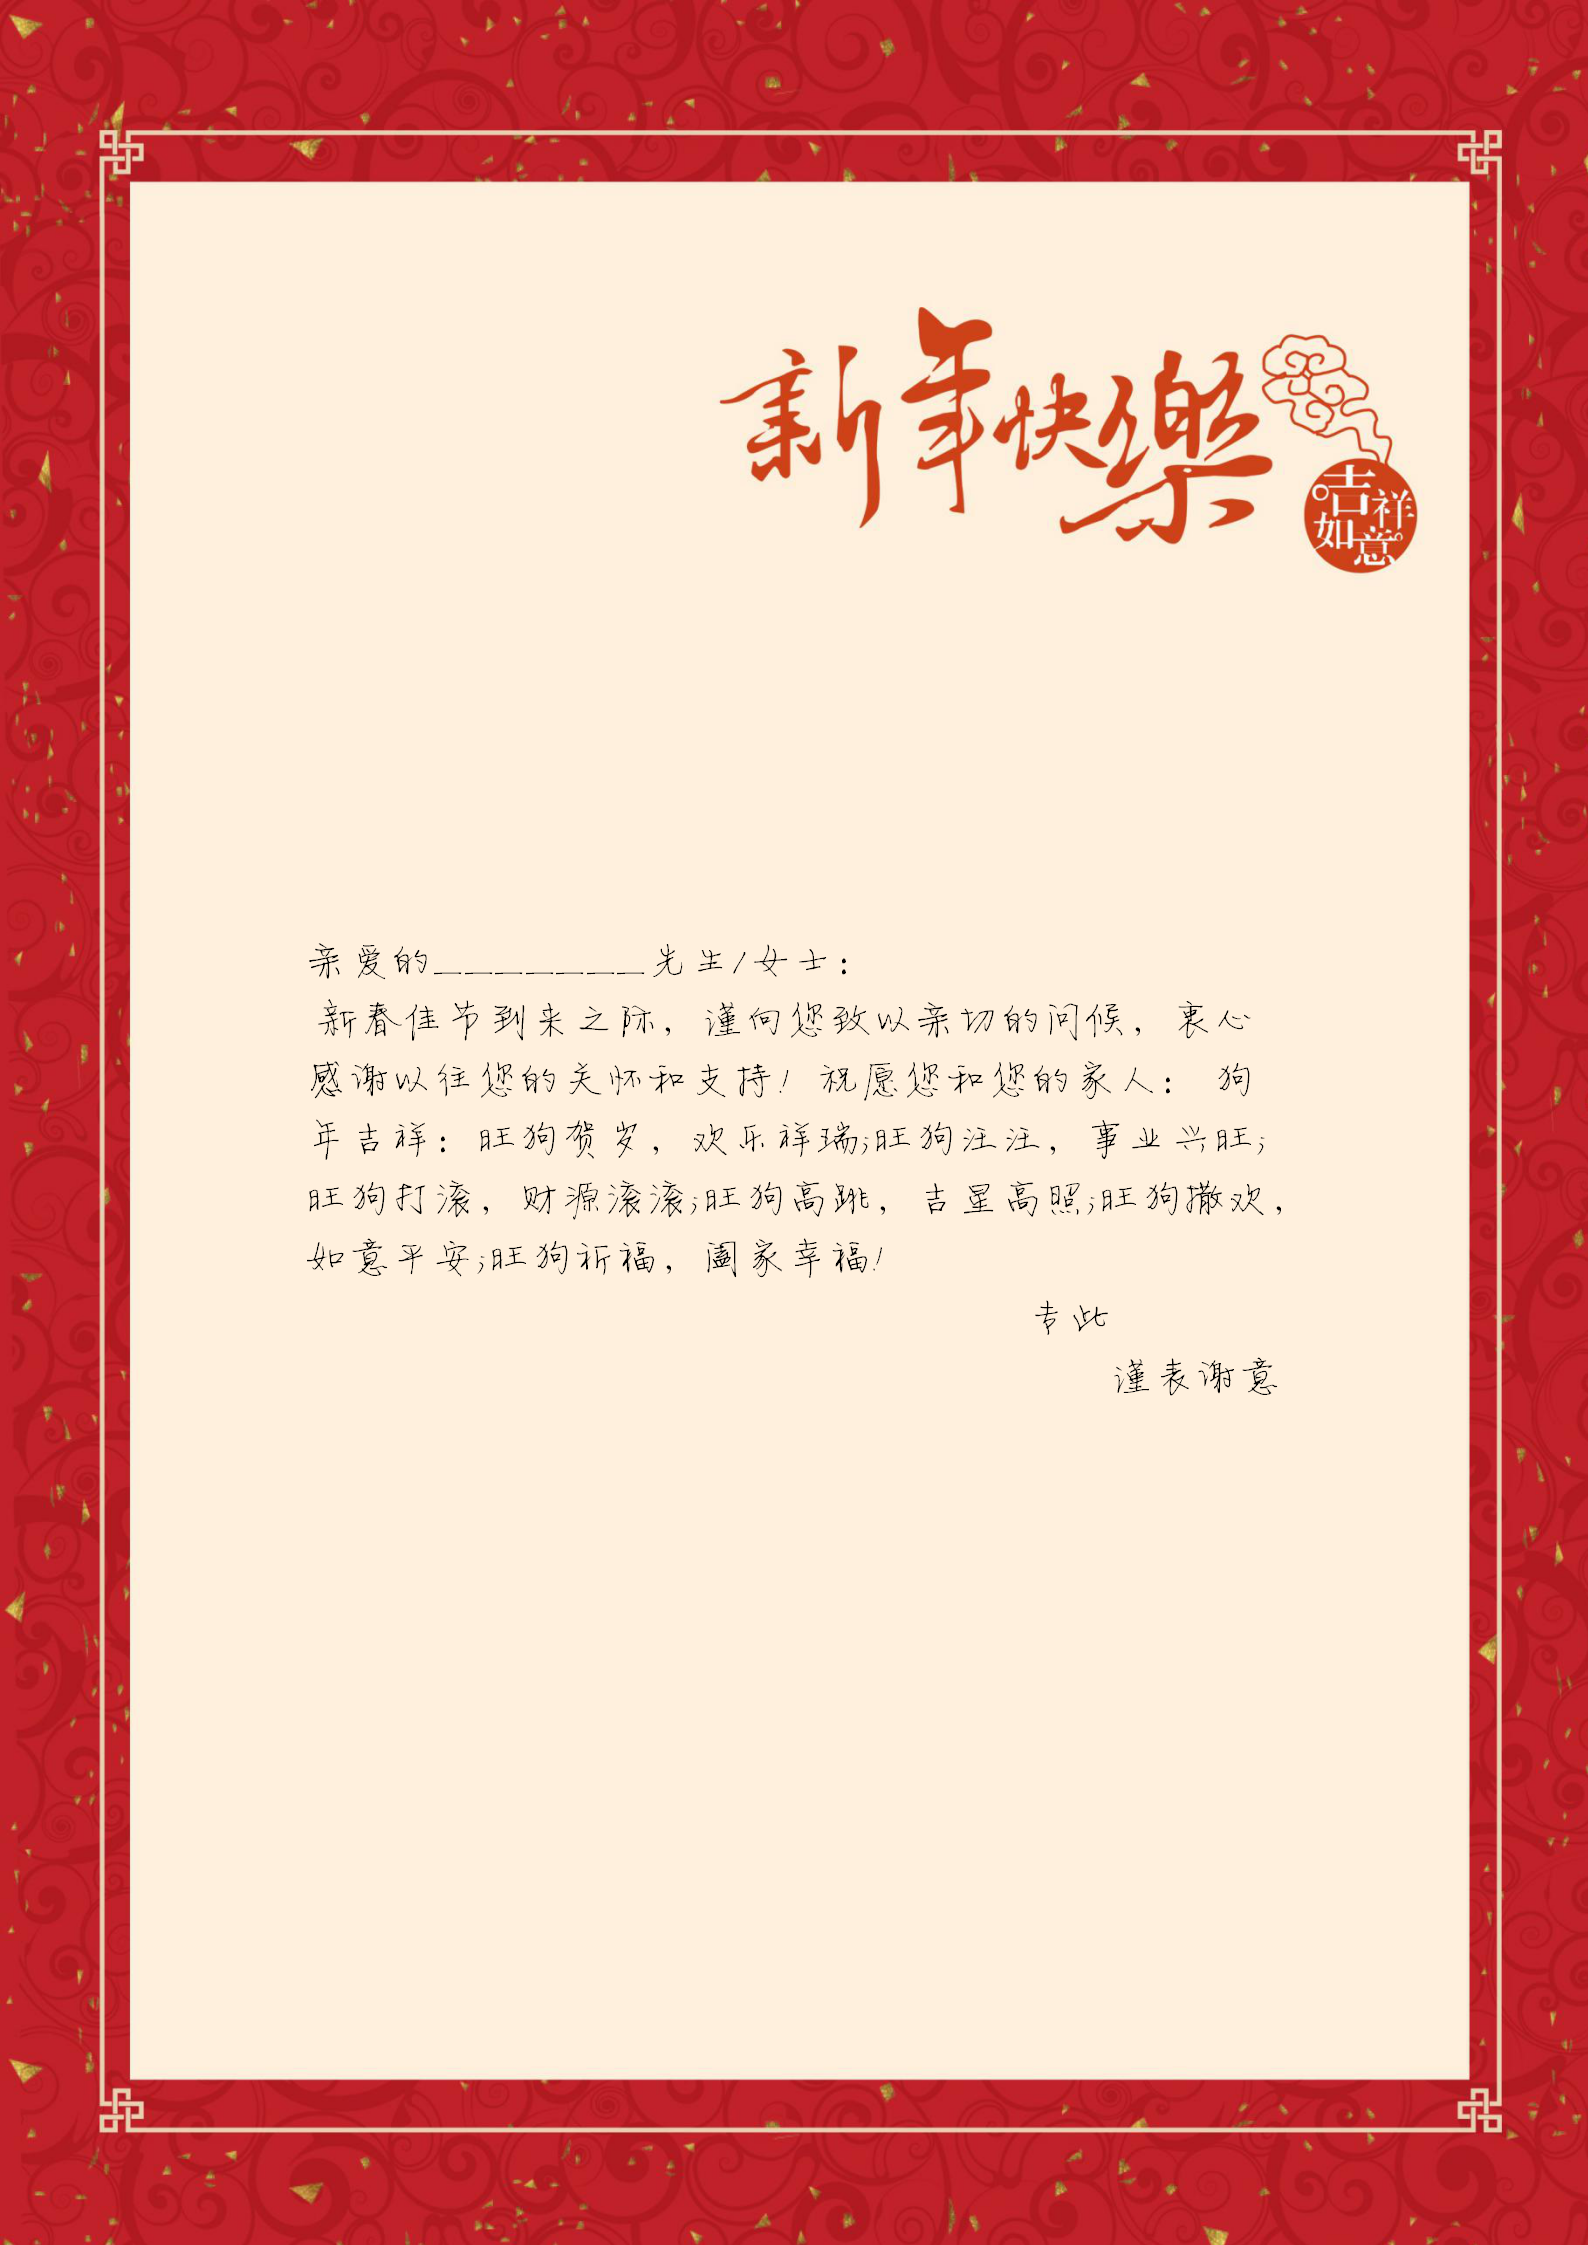 新年红色信纸背景word模板 信纸模板素材下载 W大师